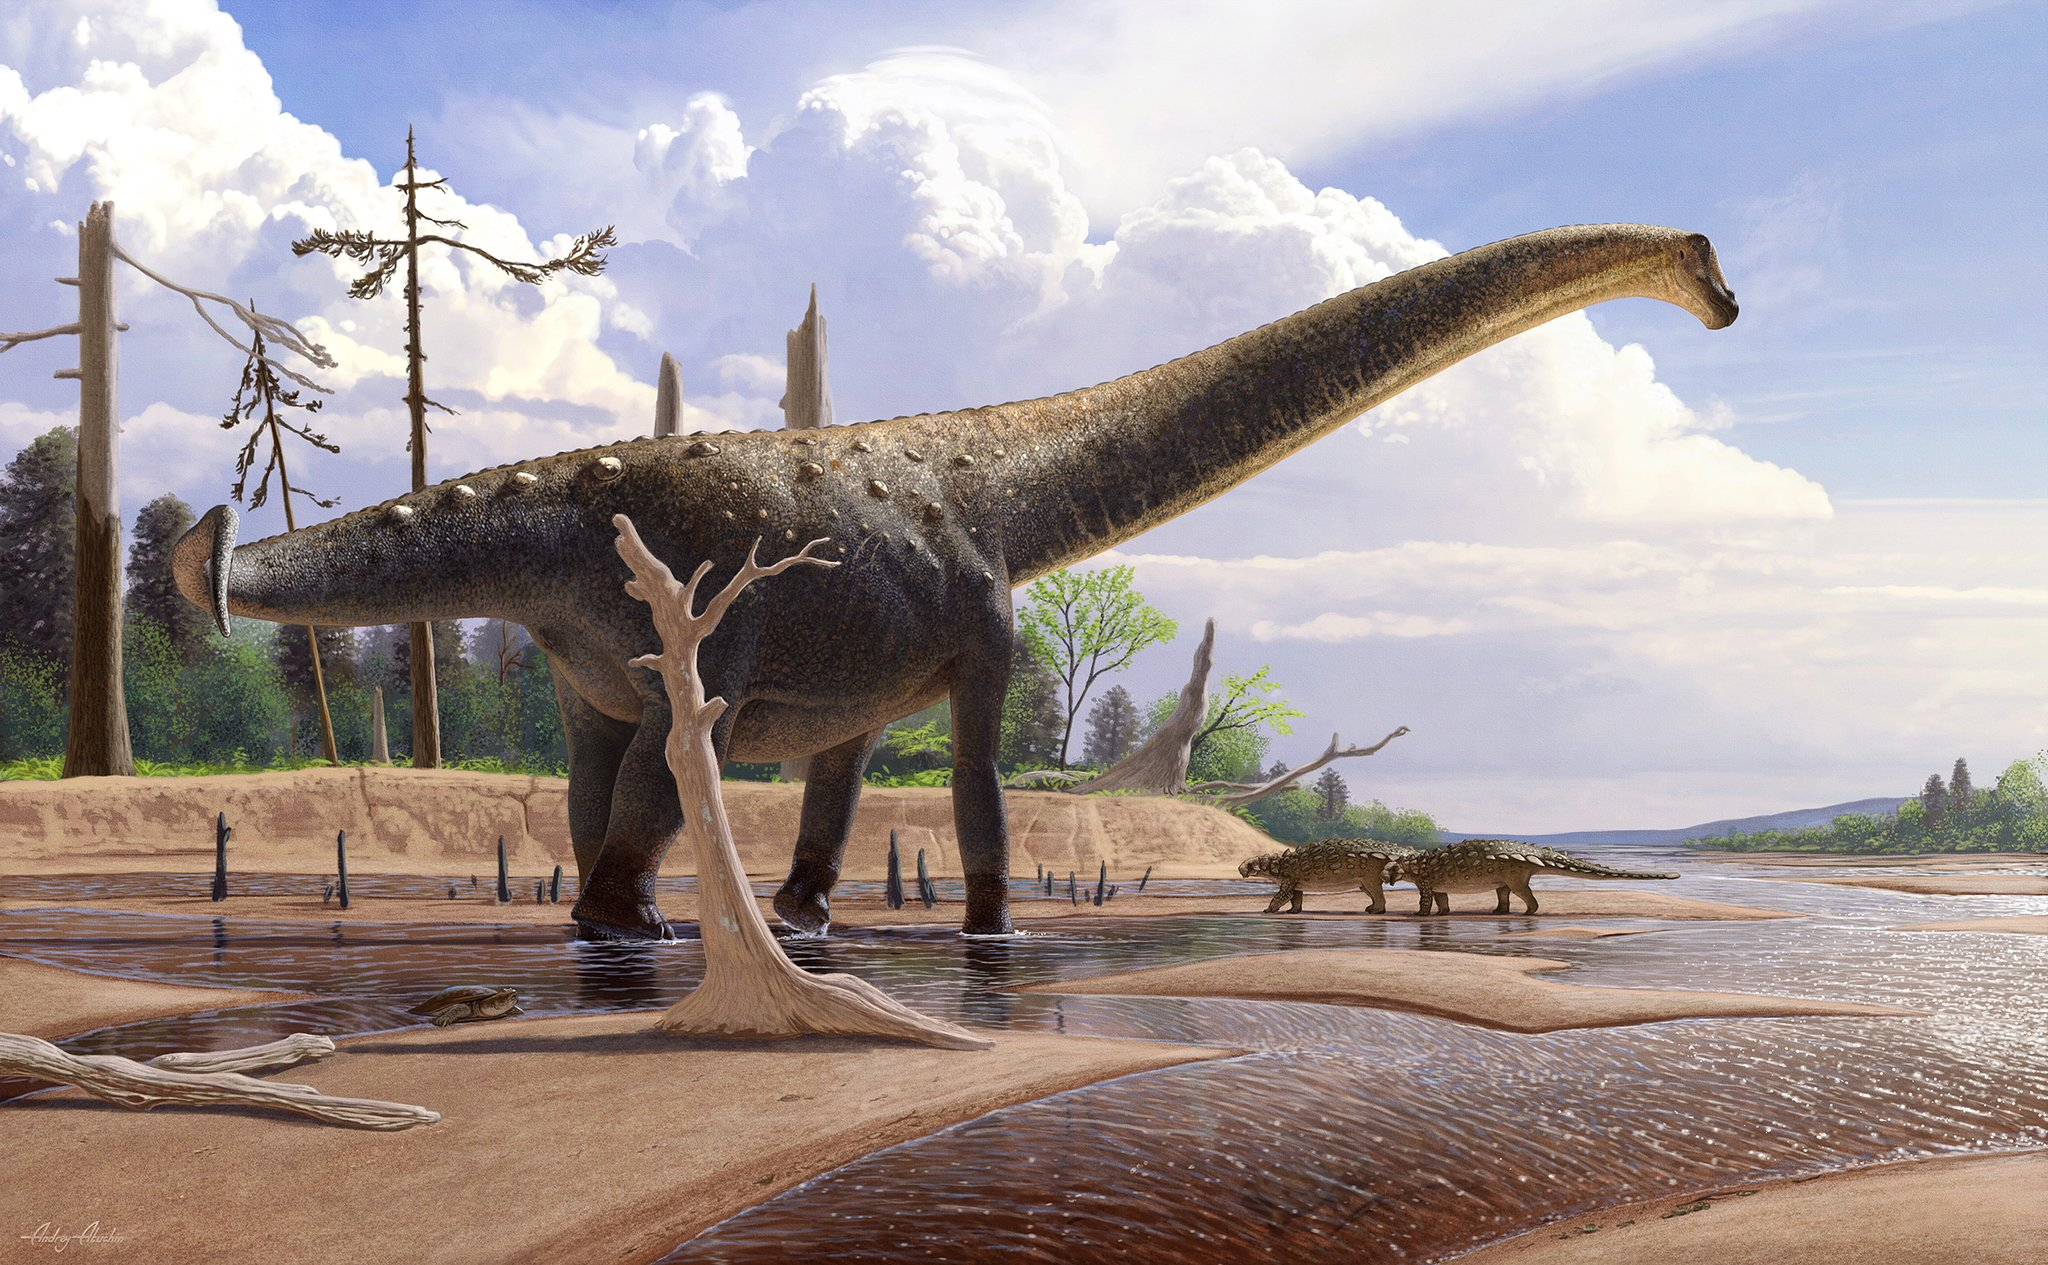 Длинношеий динозавр. Титанозавр зауропод. Травоядные динозавры зауроподы. Атучин палеоарт.